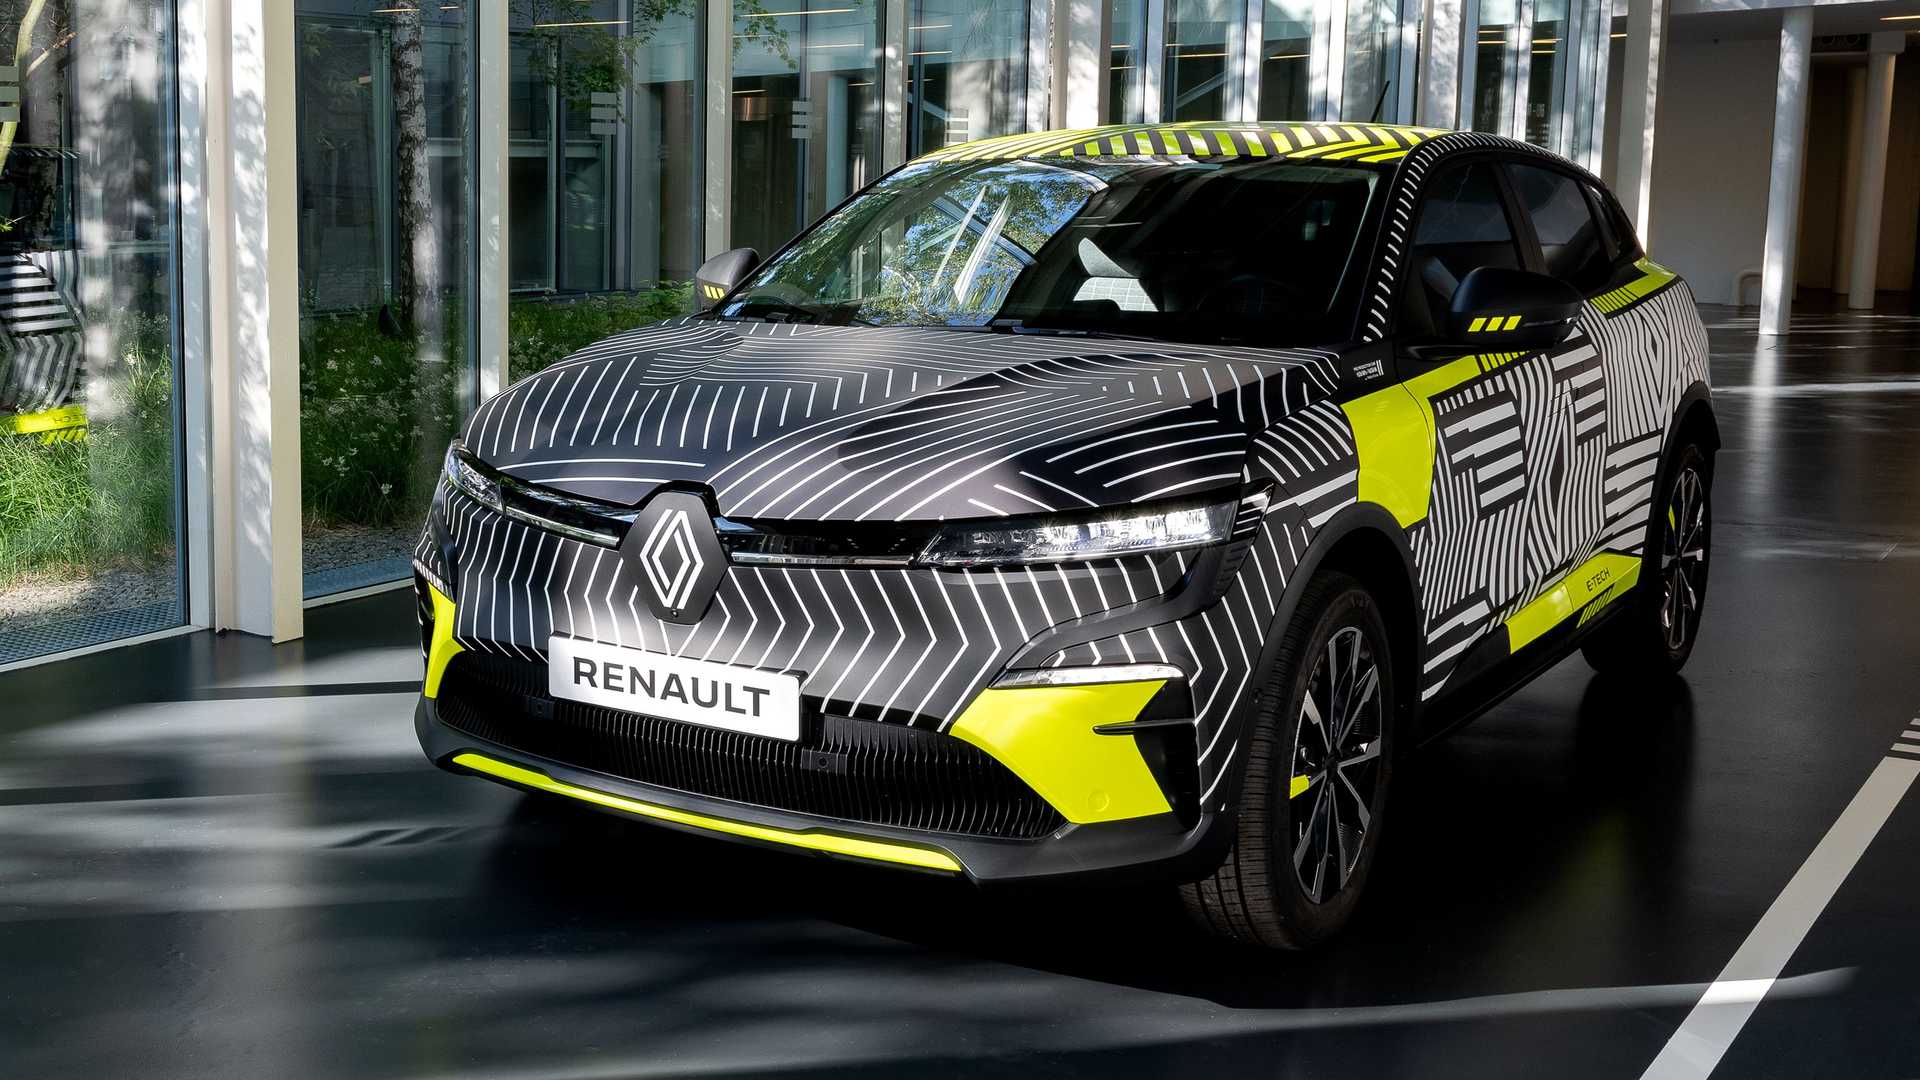 Oficjalna data premiery Renault Megane E-Tech Electric ujawniona